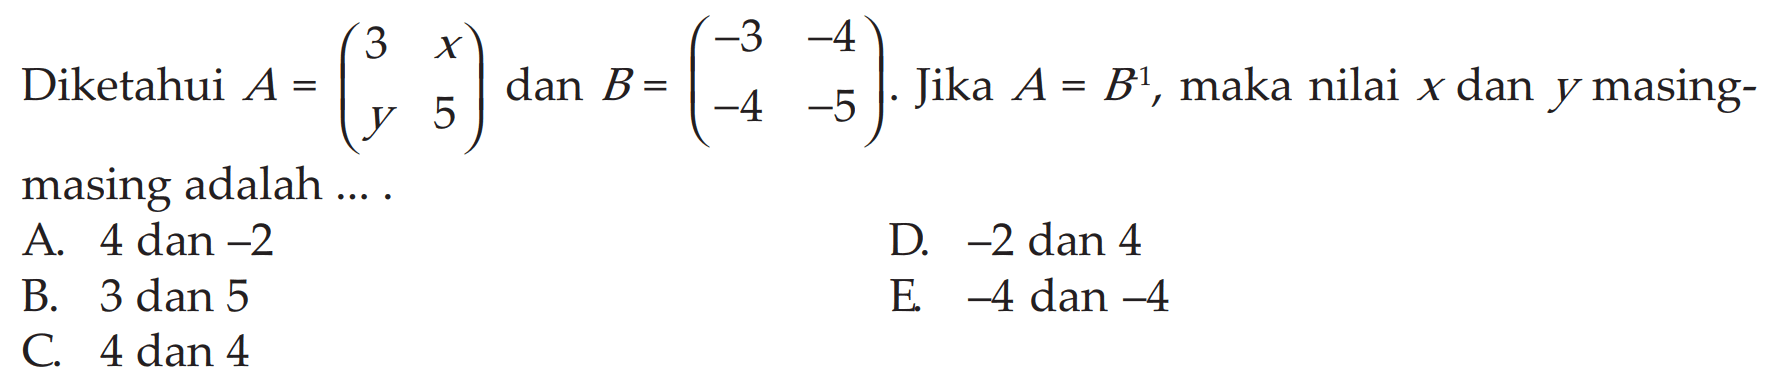 Diketahui A=(3 x y 5) dan B=(-3 -4 -4 -5). Jika A=B^(-1), maka nilai x dan y masing- masing adalah ... .